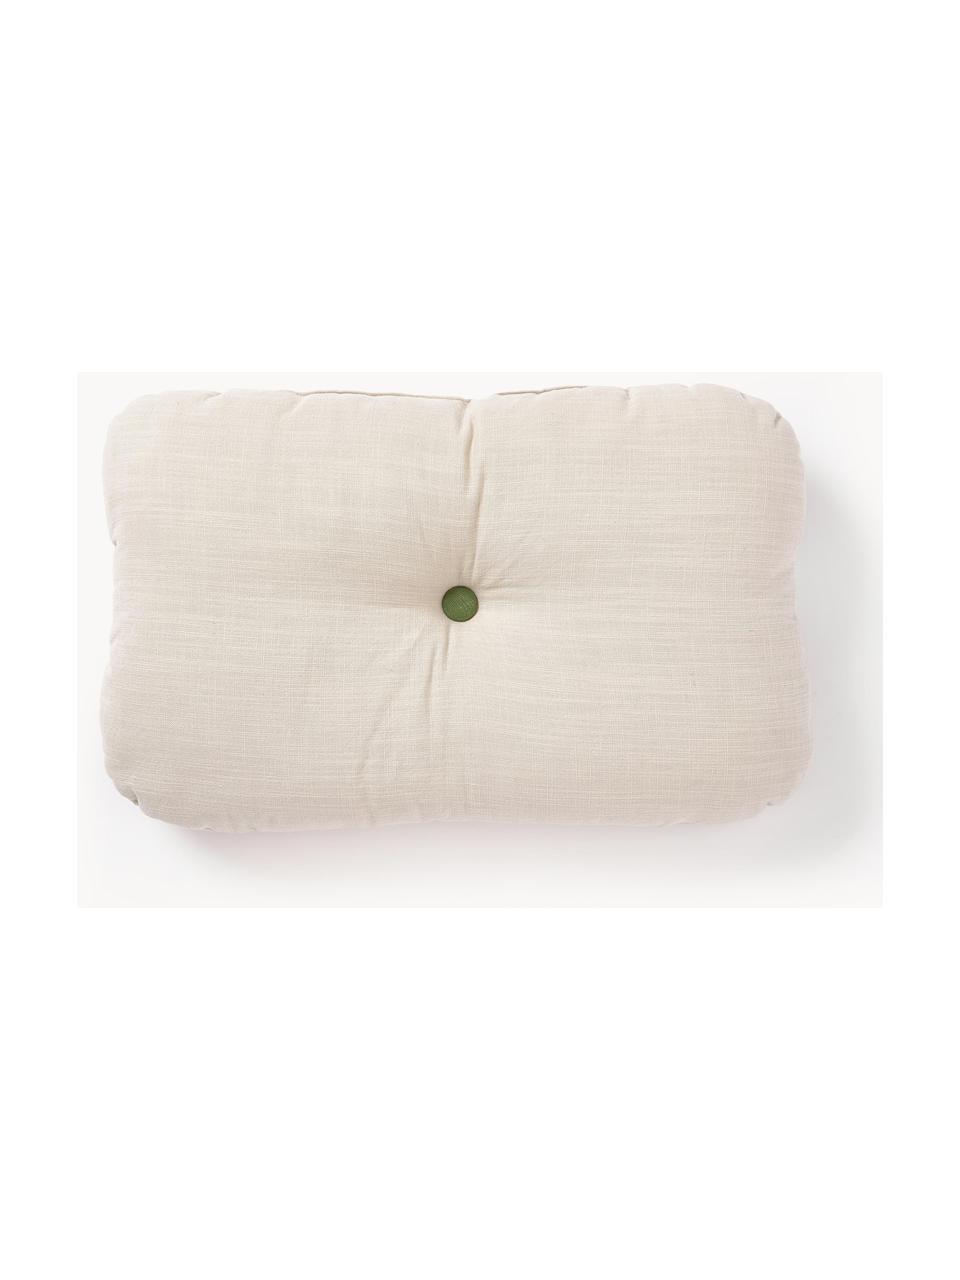 Cuscino decorativo in cotone Devi, Rivestimento: 100% cotone, Beige chiaro, Larg. 30 x Lung. 50 cm